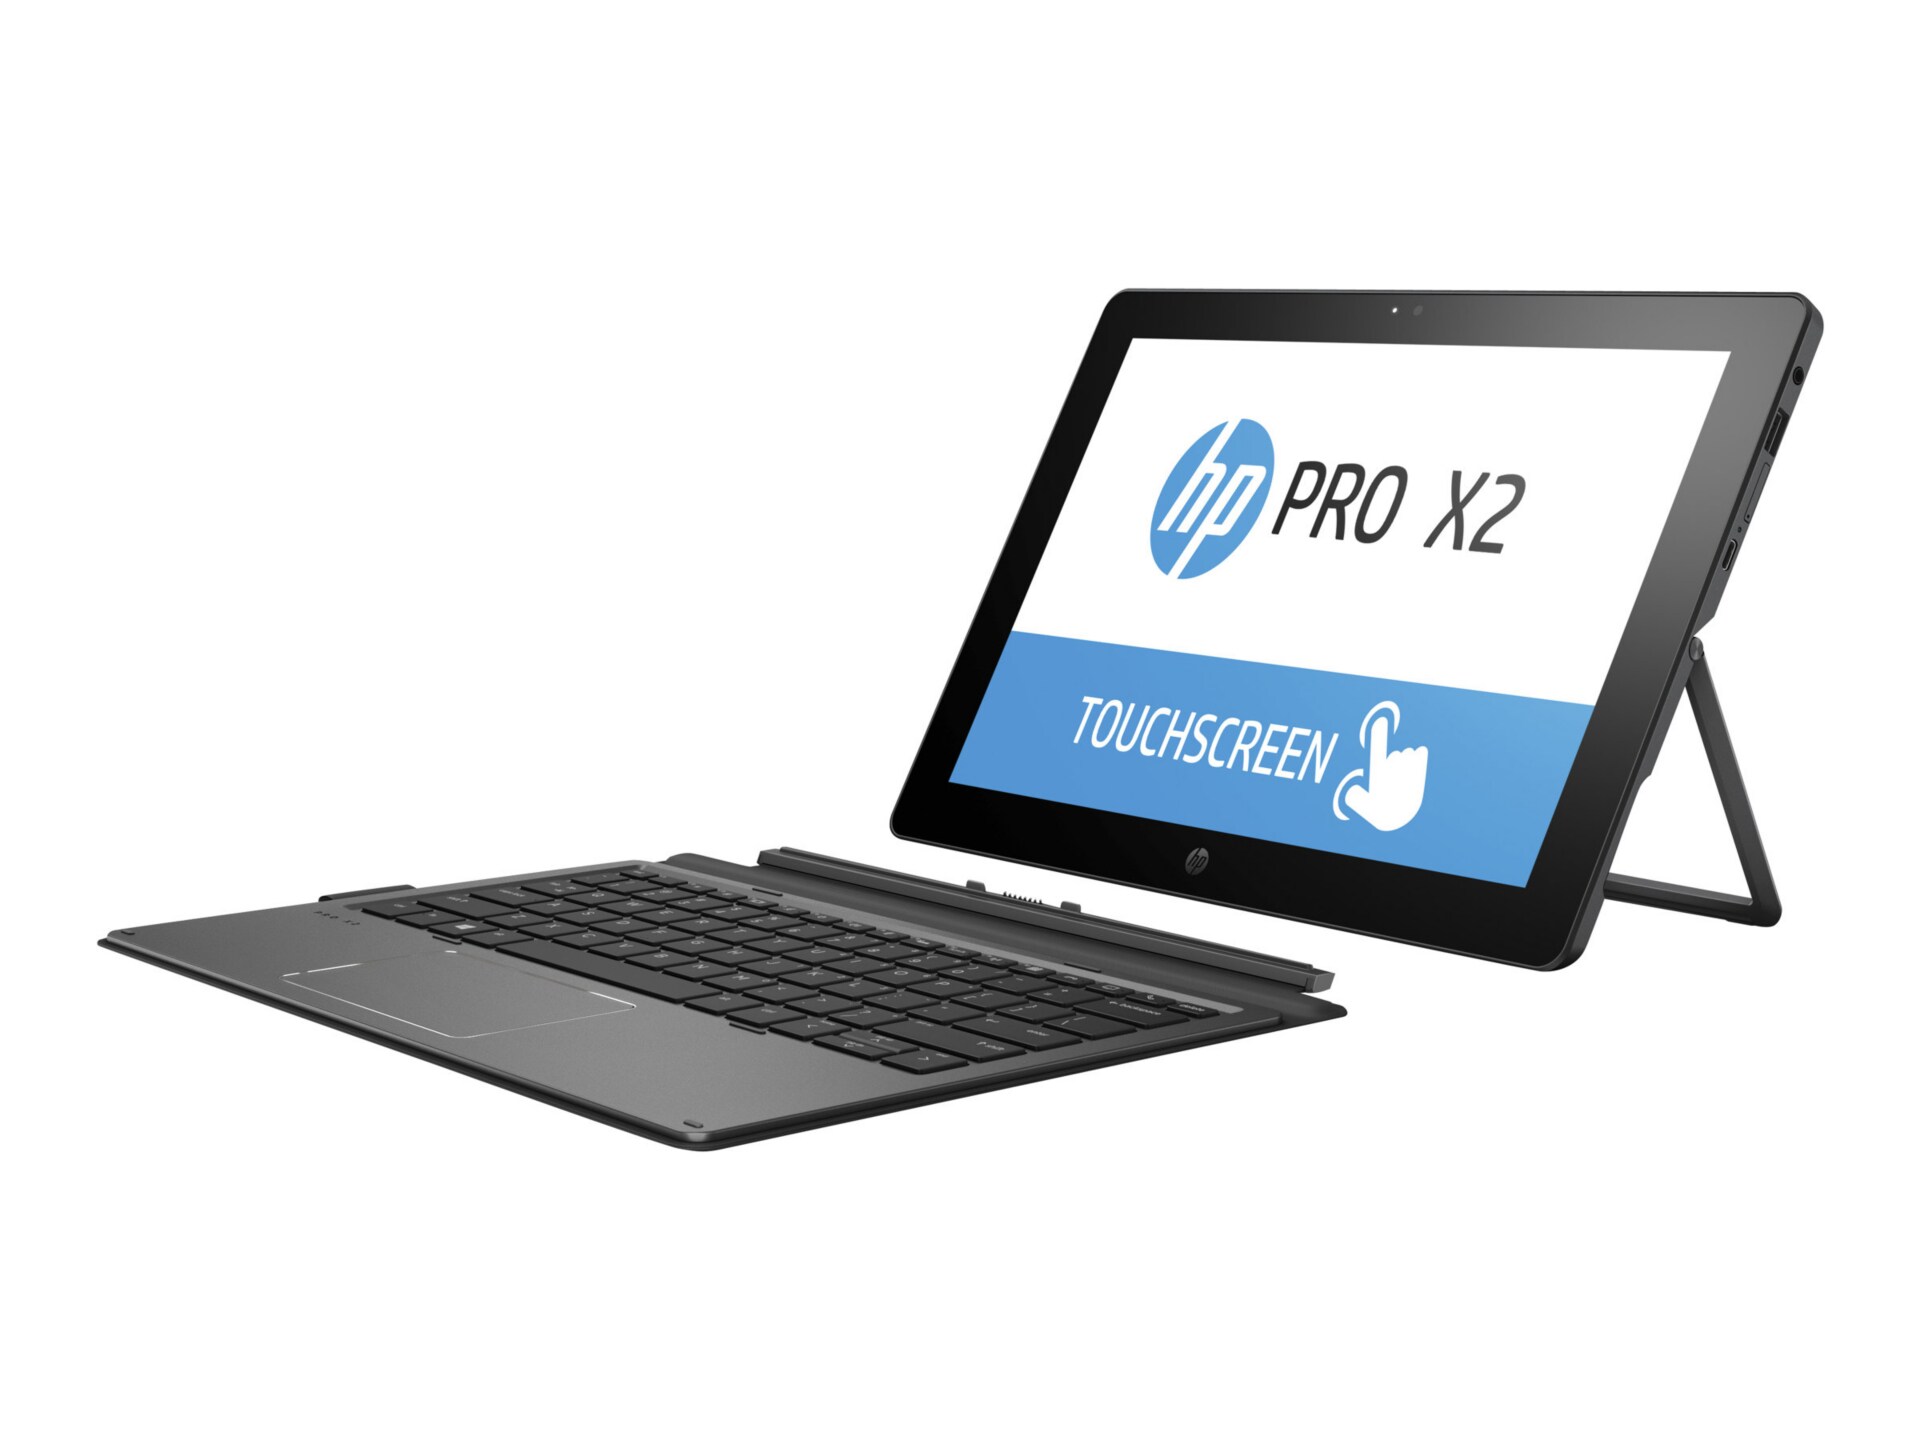 HP Pro x2 612 G2 - 12" - Core i7 7Y75 - 8 GB RAM - 512 GB SSD - with HP Pro x2 612 G2 Collaboration Keyboard